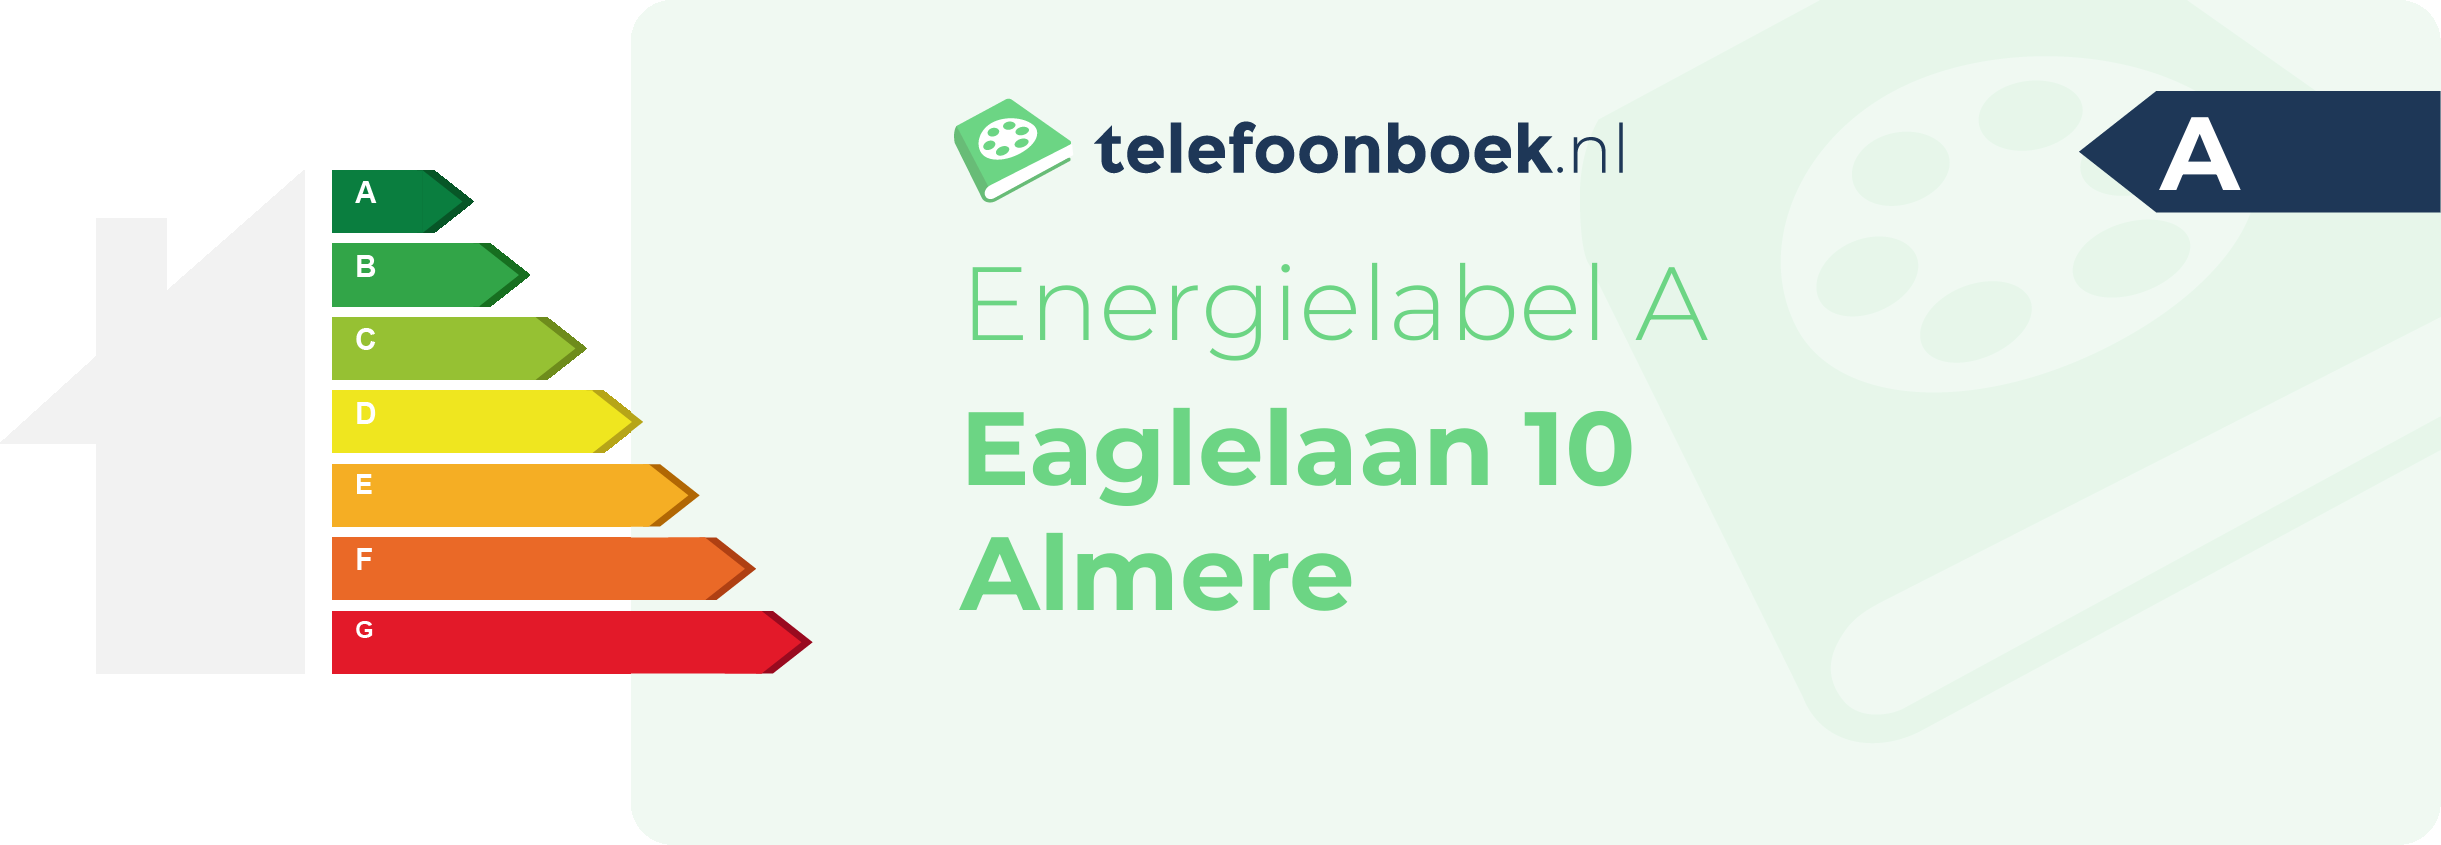 Energielabel Eaglelaan 10 Almere